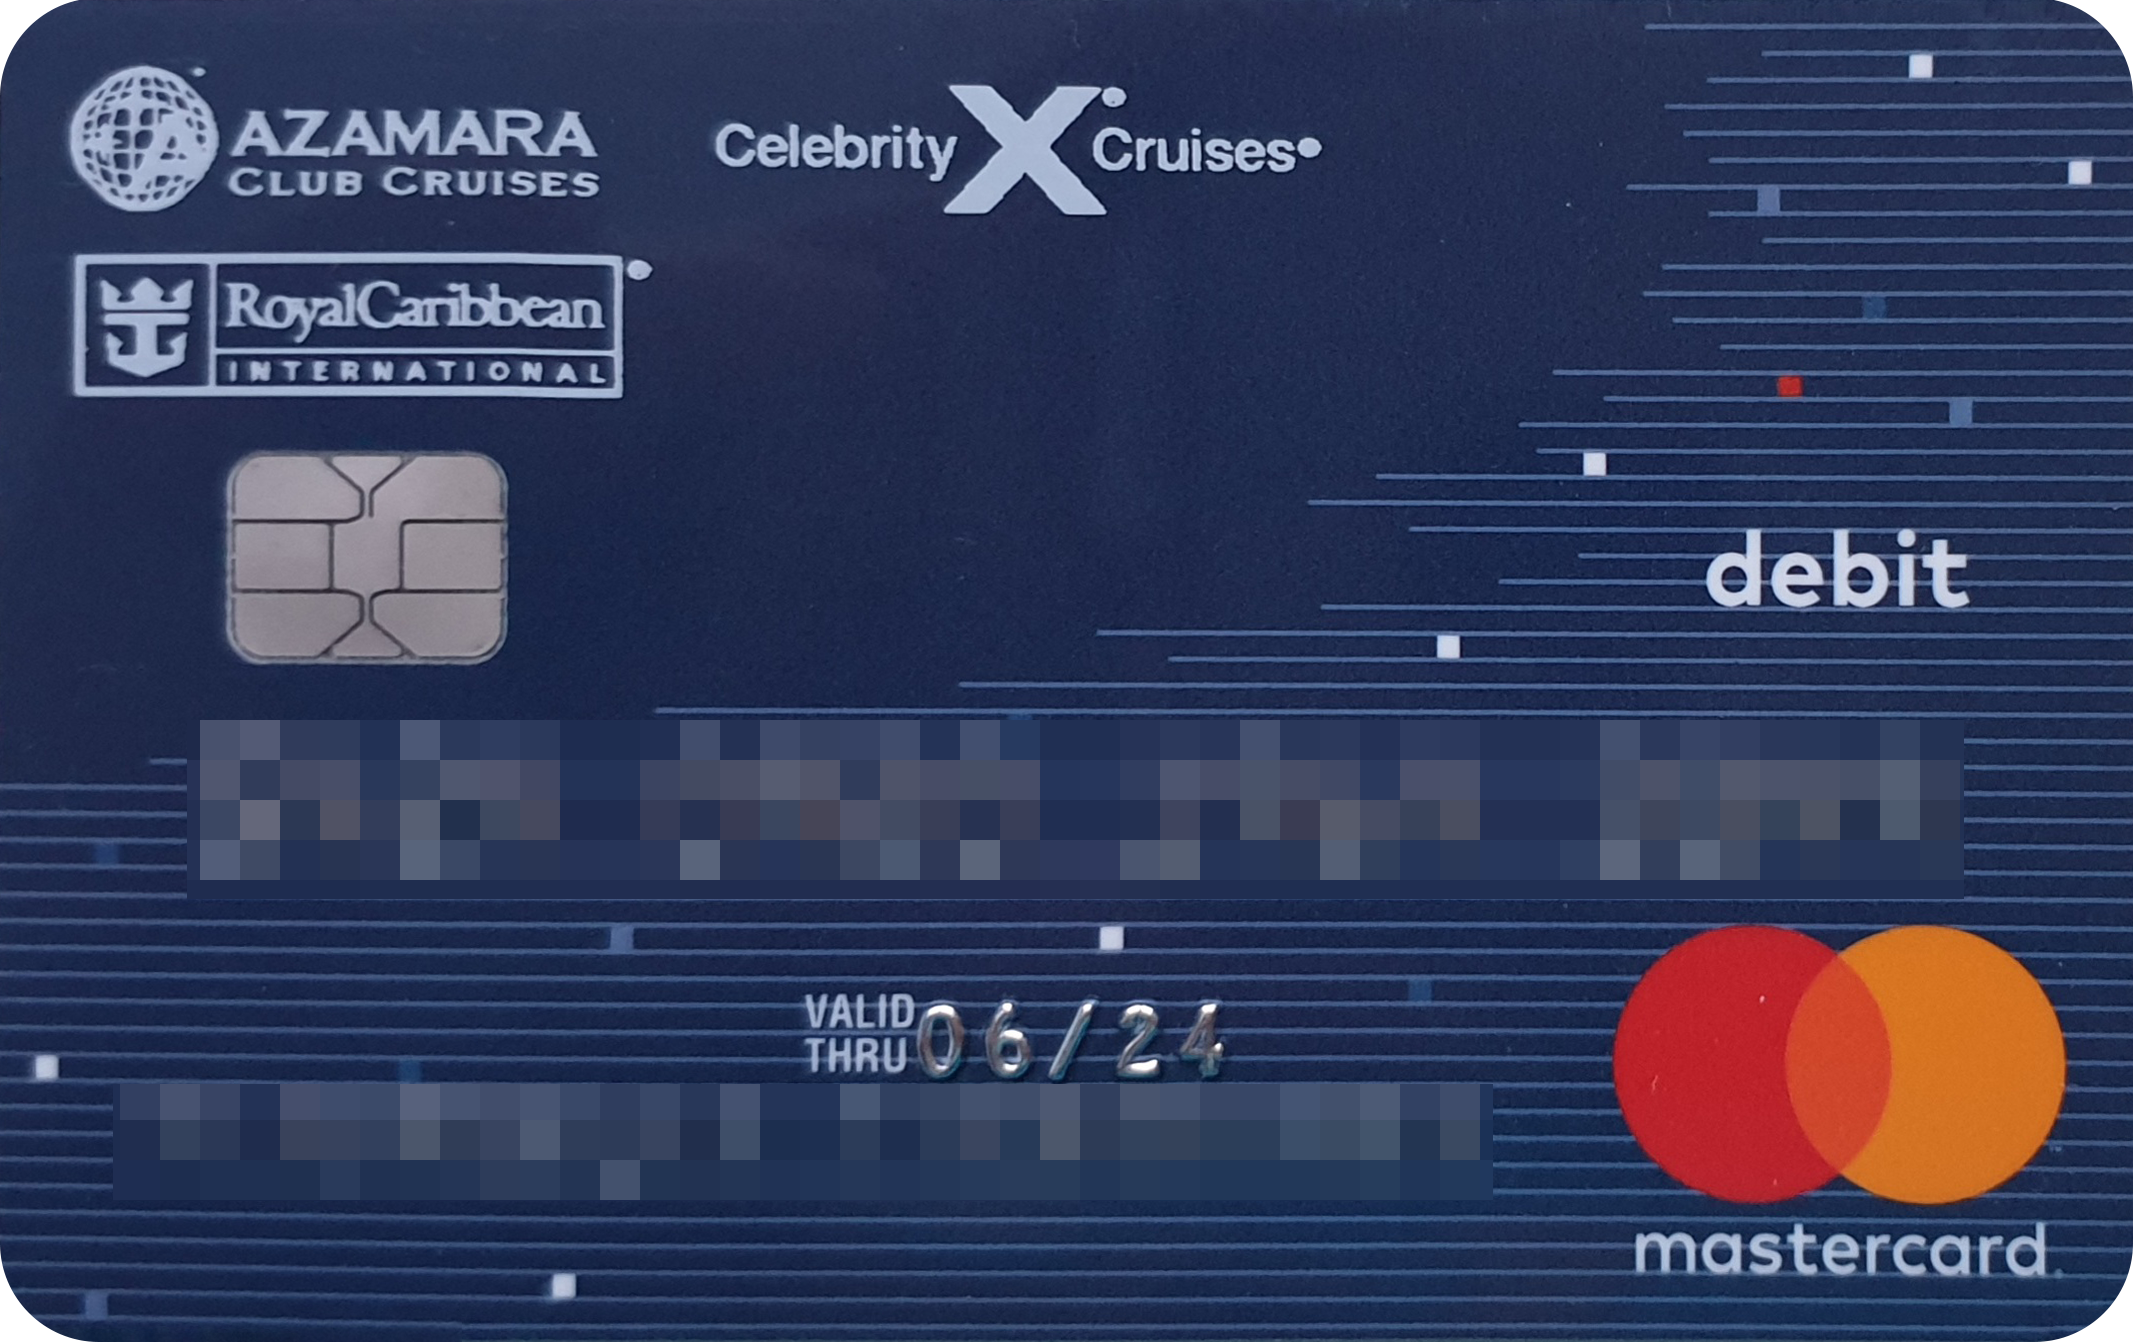 Зарплатная карта, которую выдает круизная компания Celebrity Cruises. Наличность можно снимать на корабле в банкомате без процентов, но я не хотела везти с собой крупную сумму, которую к тому же пришлось бы декларировать в аэропорту. А на личные траты мне хватало чаевых